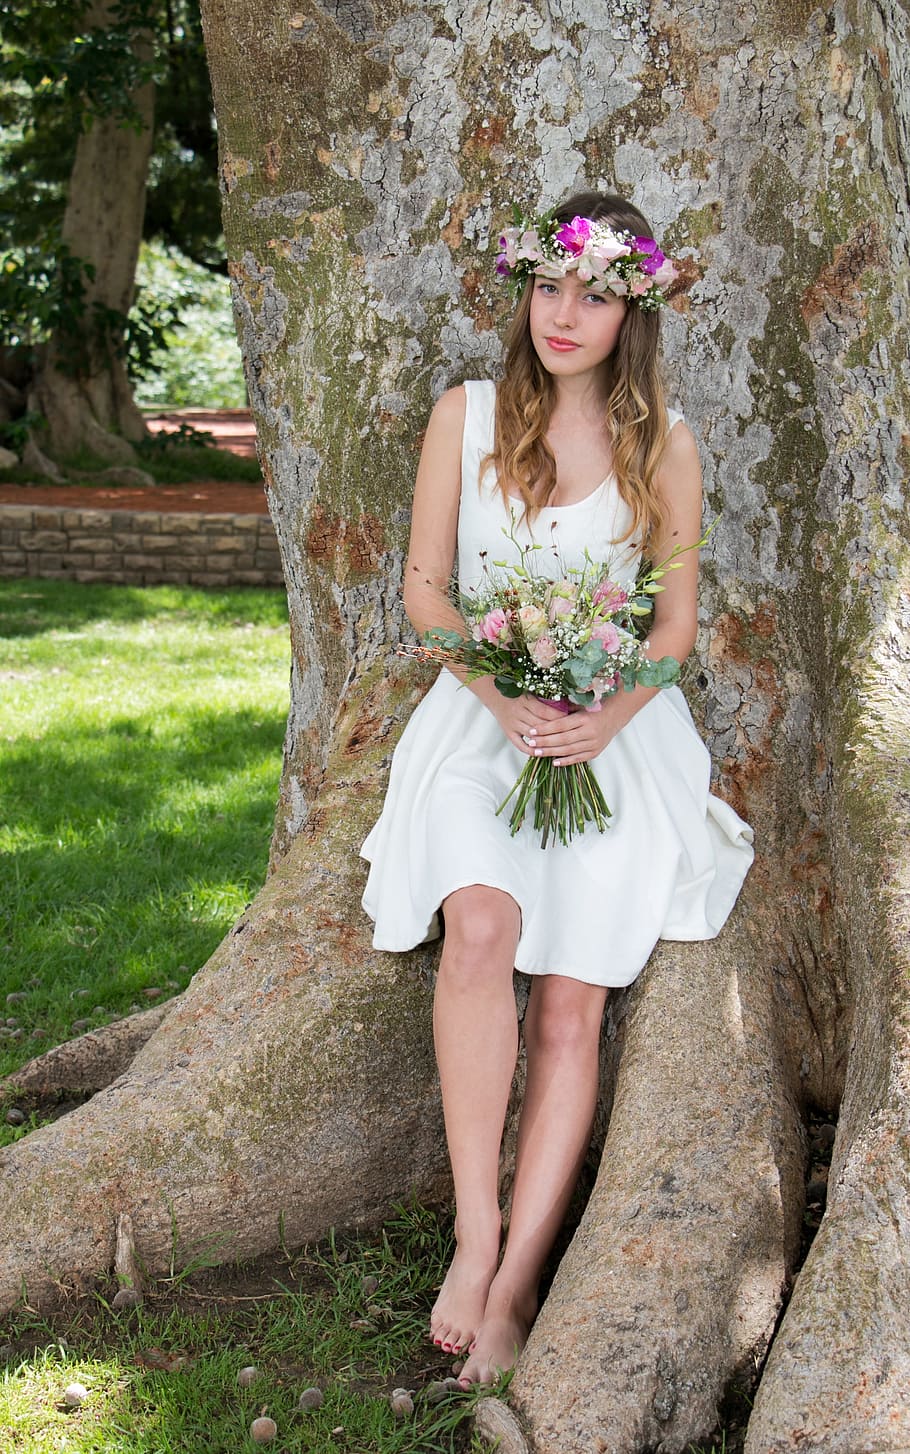 mujer, blanco, vestido sin mangas, posando, foto, adolescente, flores, floral, naturaleza, árbol